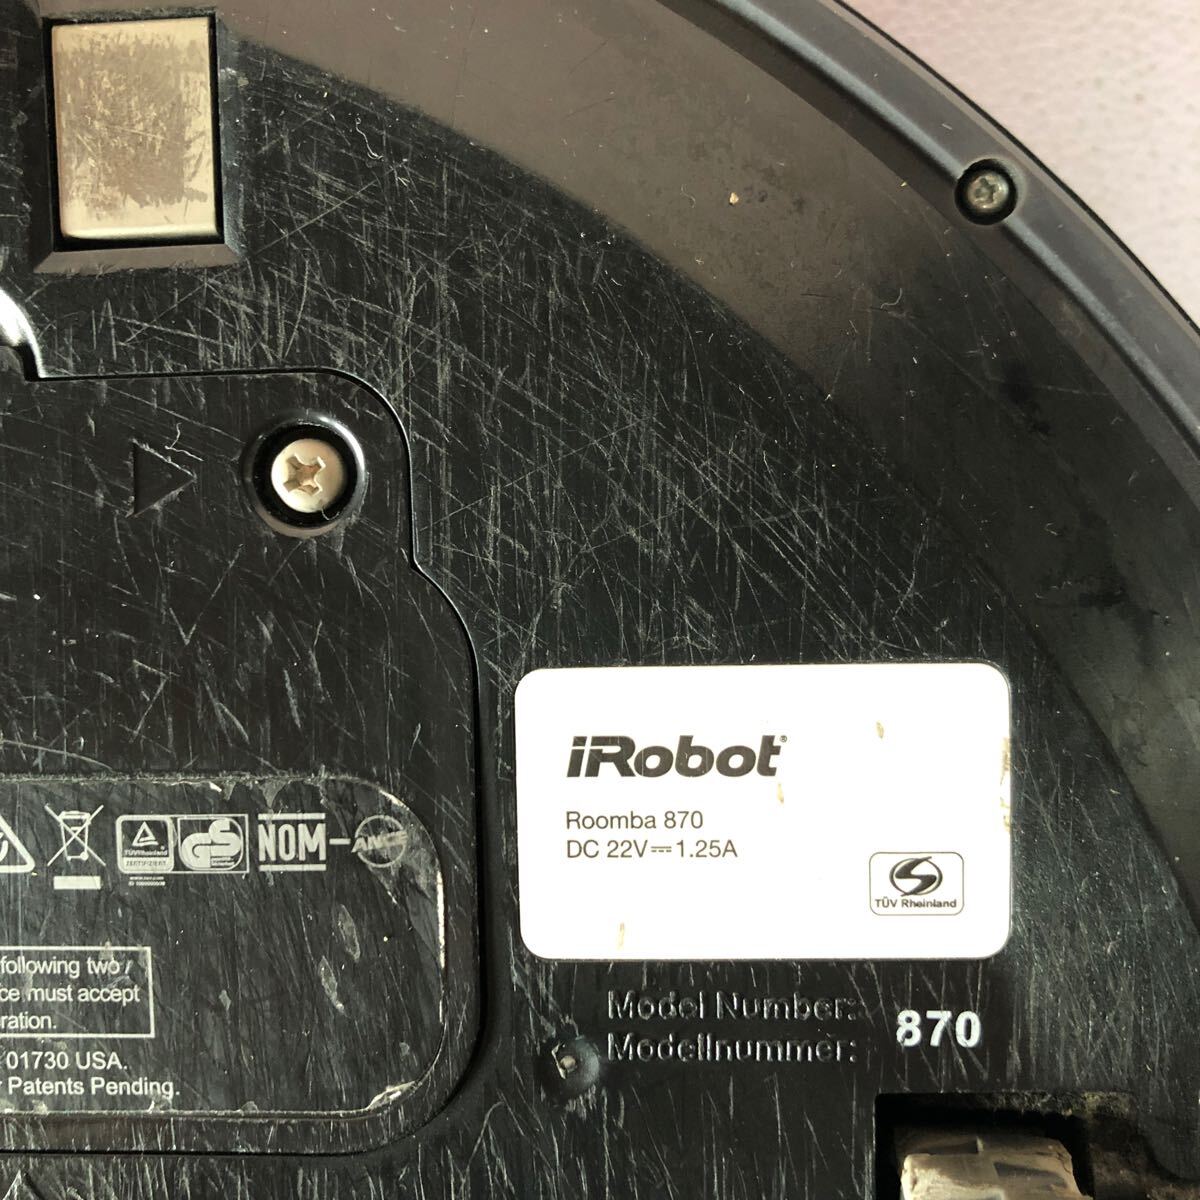 iRobot I робот Roomba roomba 870 робот очиститель работоспособность не проверялась не проверено утиль 